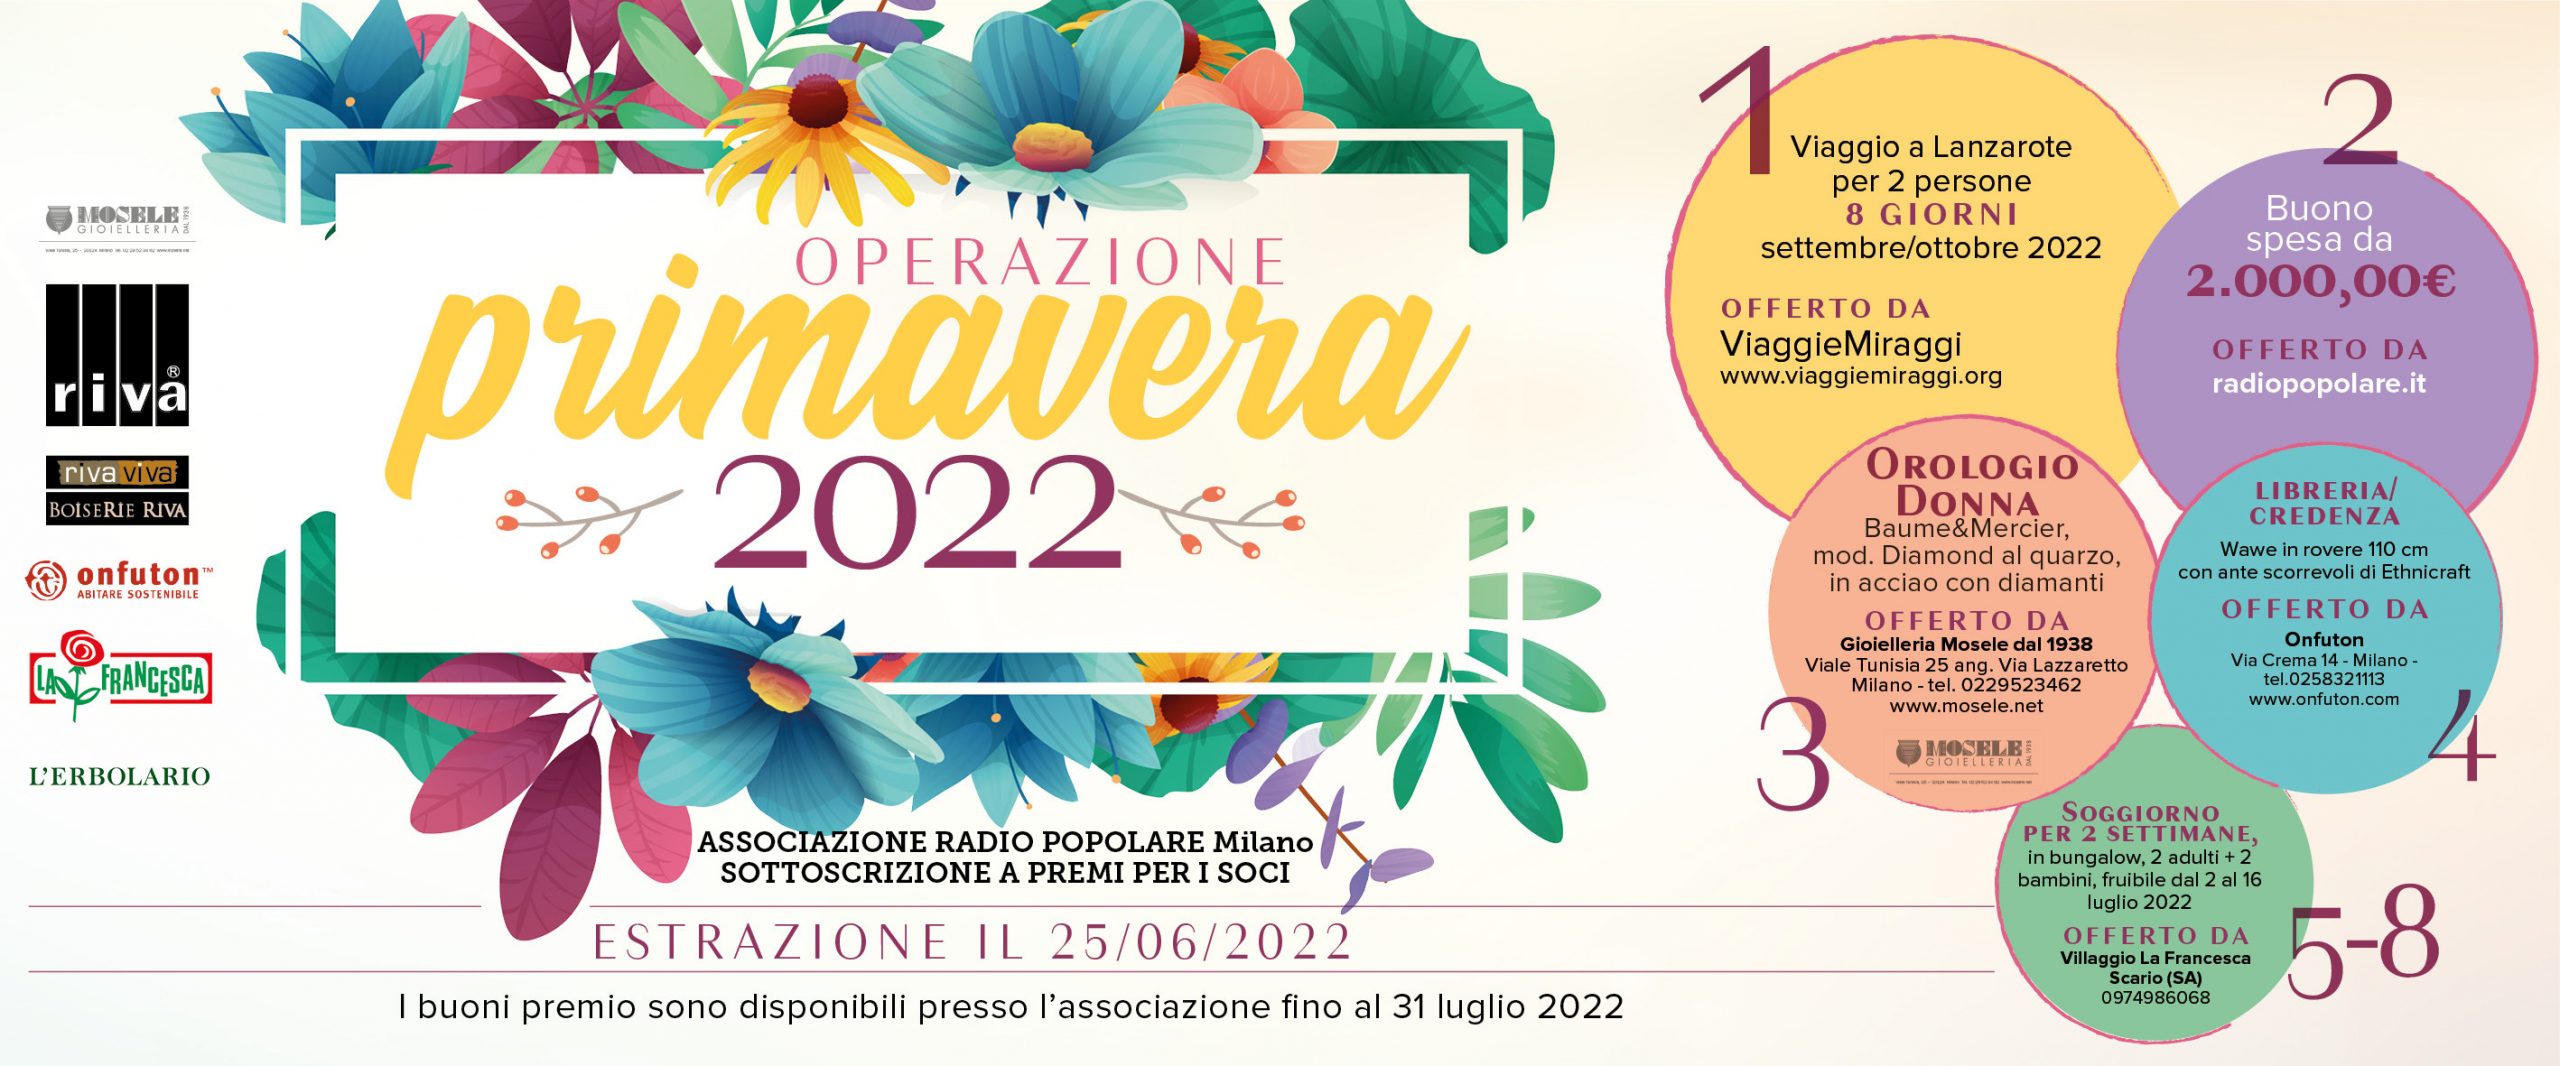 operazione primavera 2022 biglietti 1